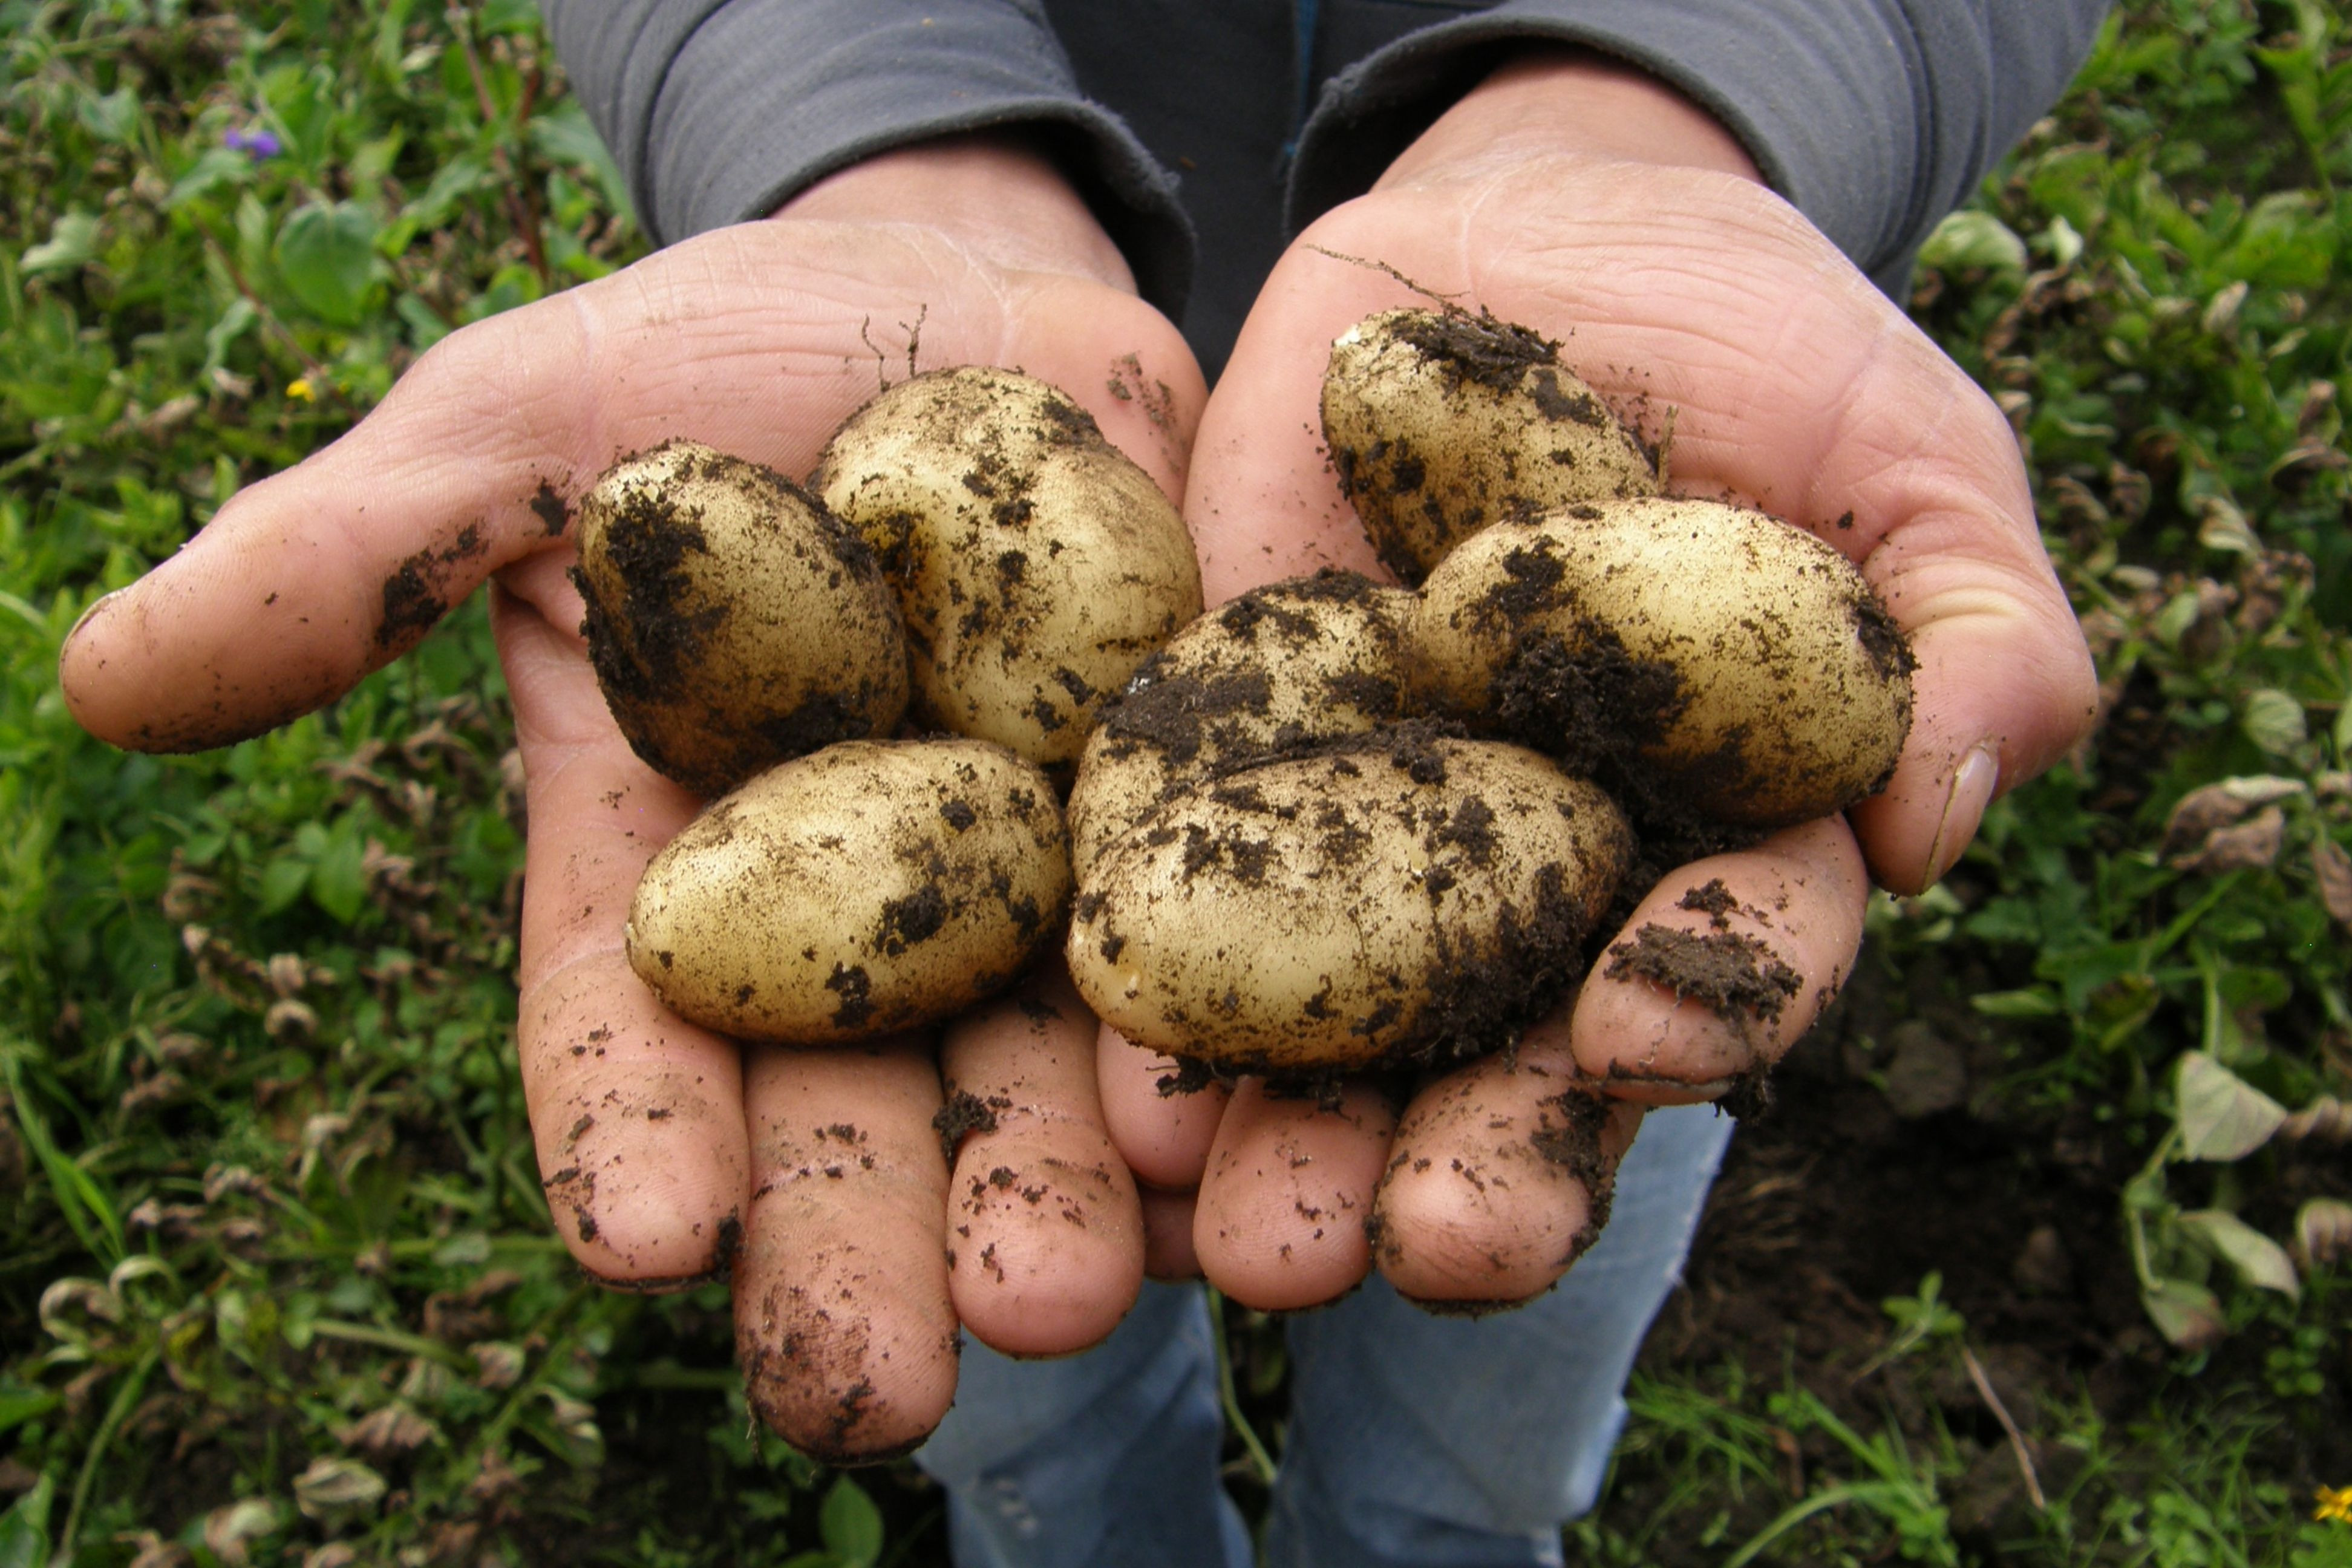 Conserver les pommes de terre plus longtemps : Trucs & Astuces